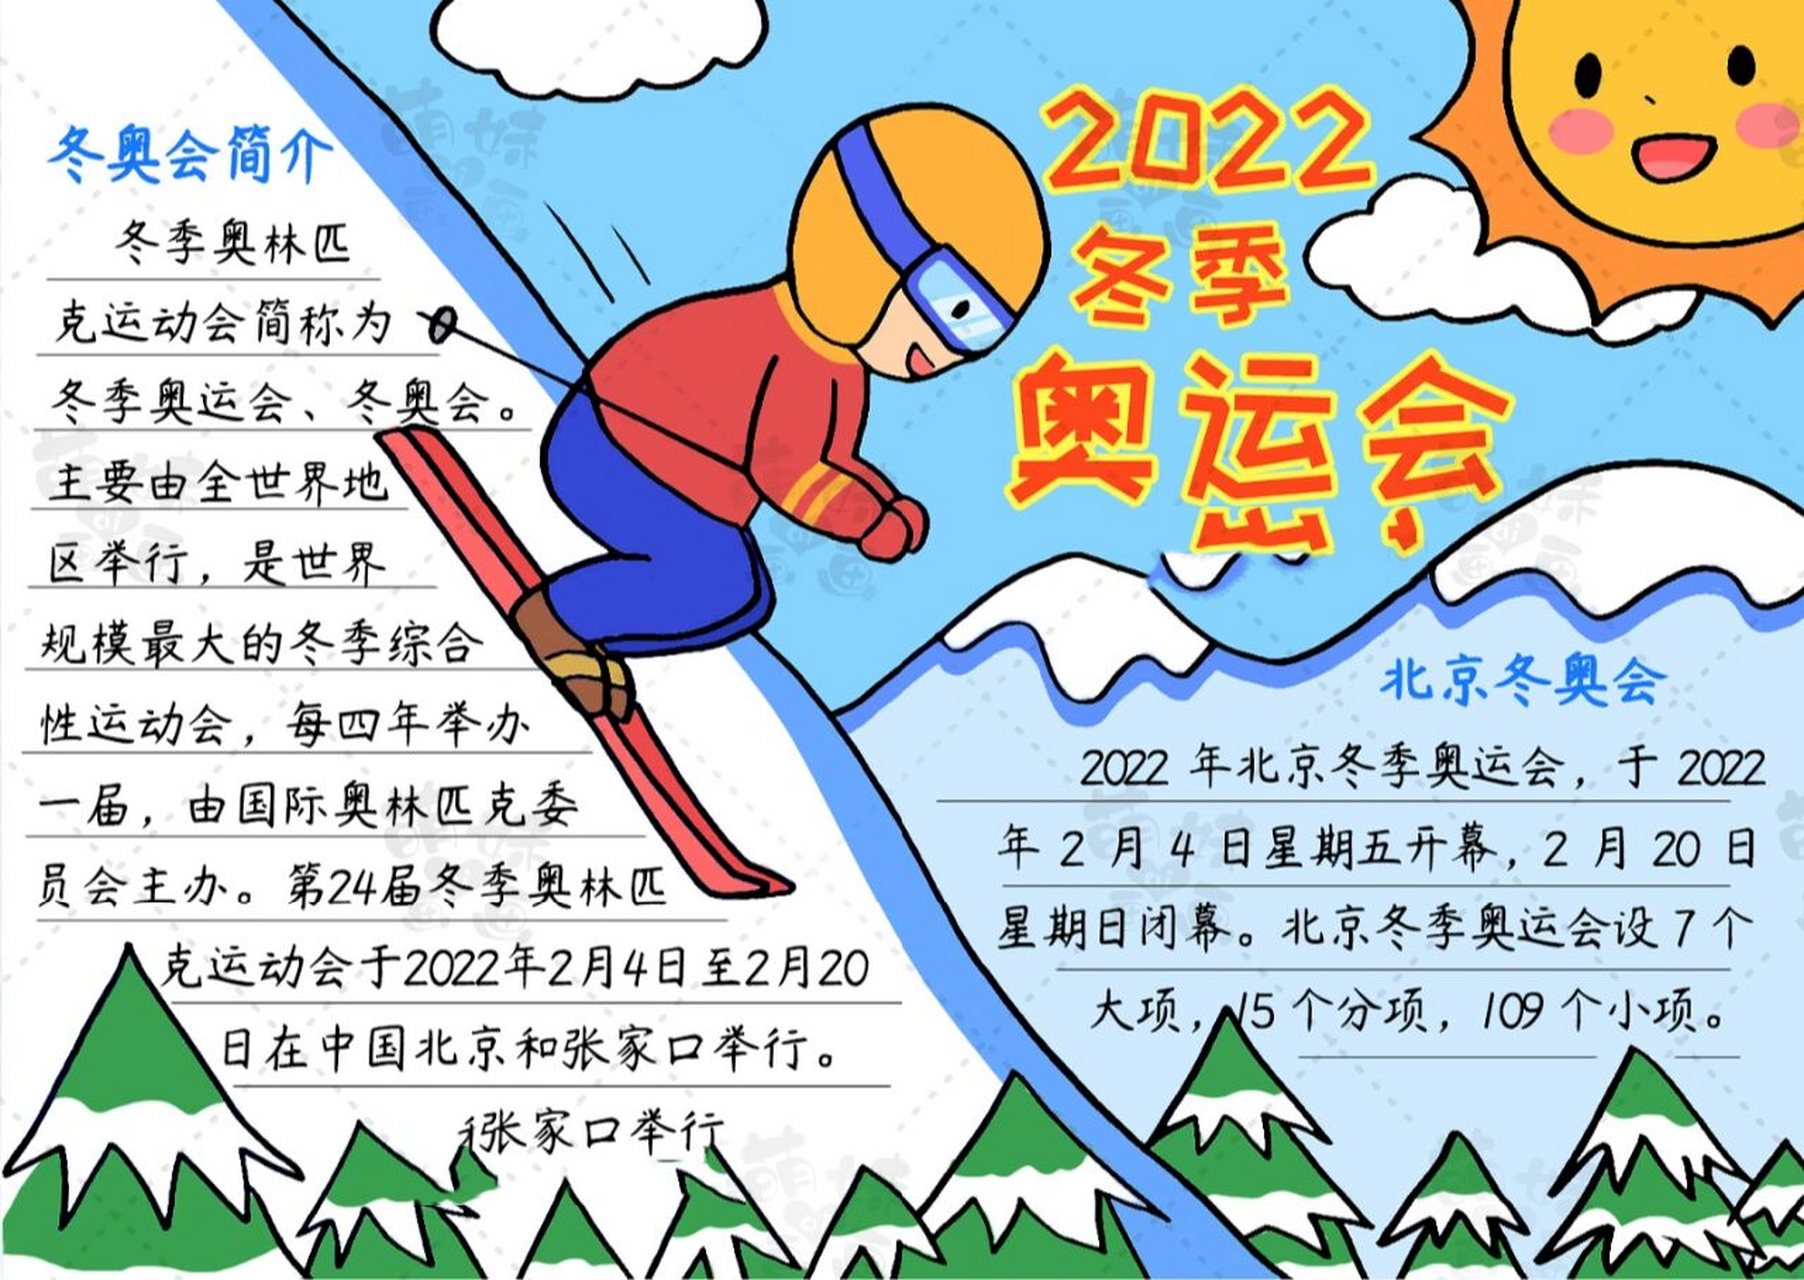 含文字内容的2022北京冬奥会手抄报模板 第24届冬季奥林匹克运动会即